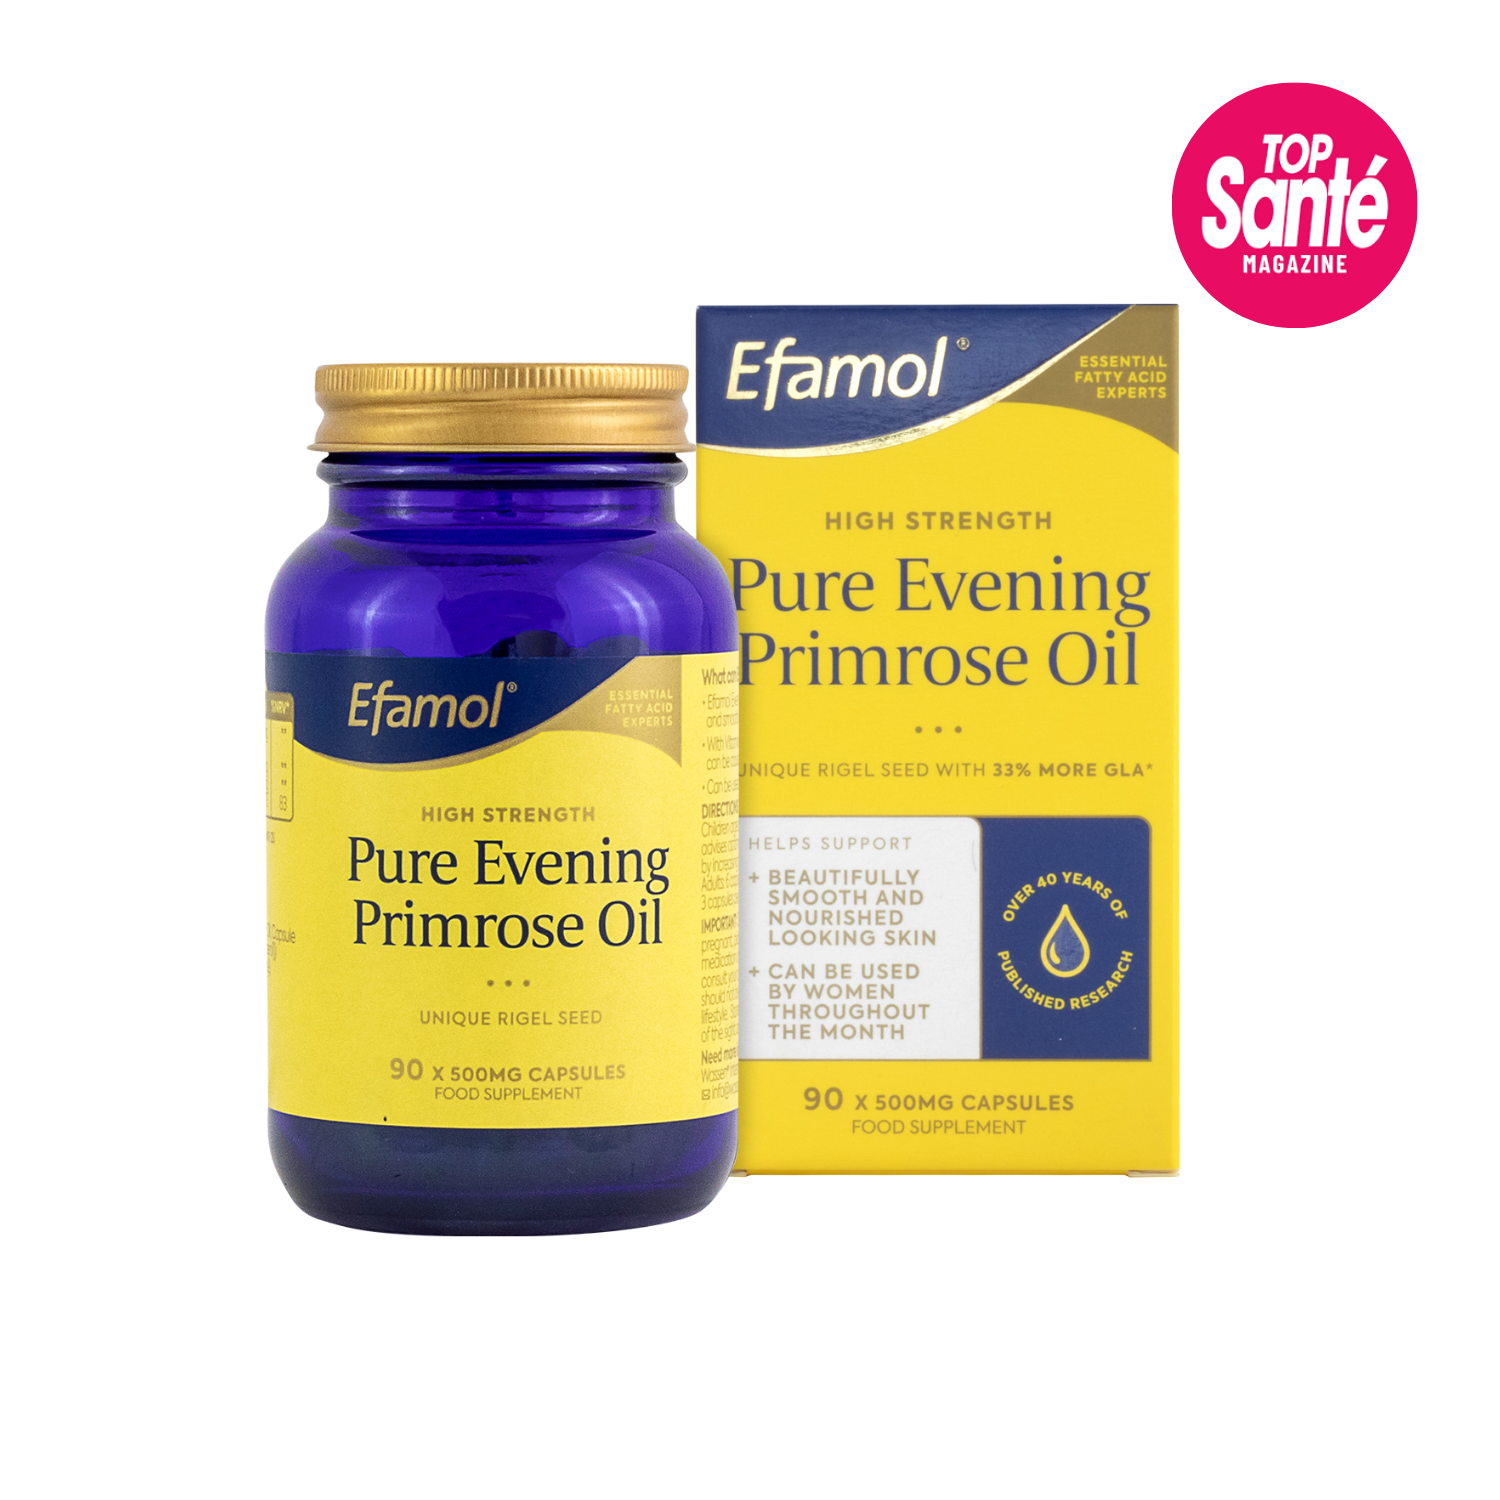 Efamol Evening Primrose Oi, featured in Top Sante